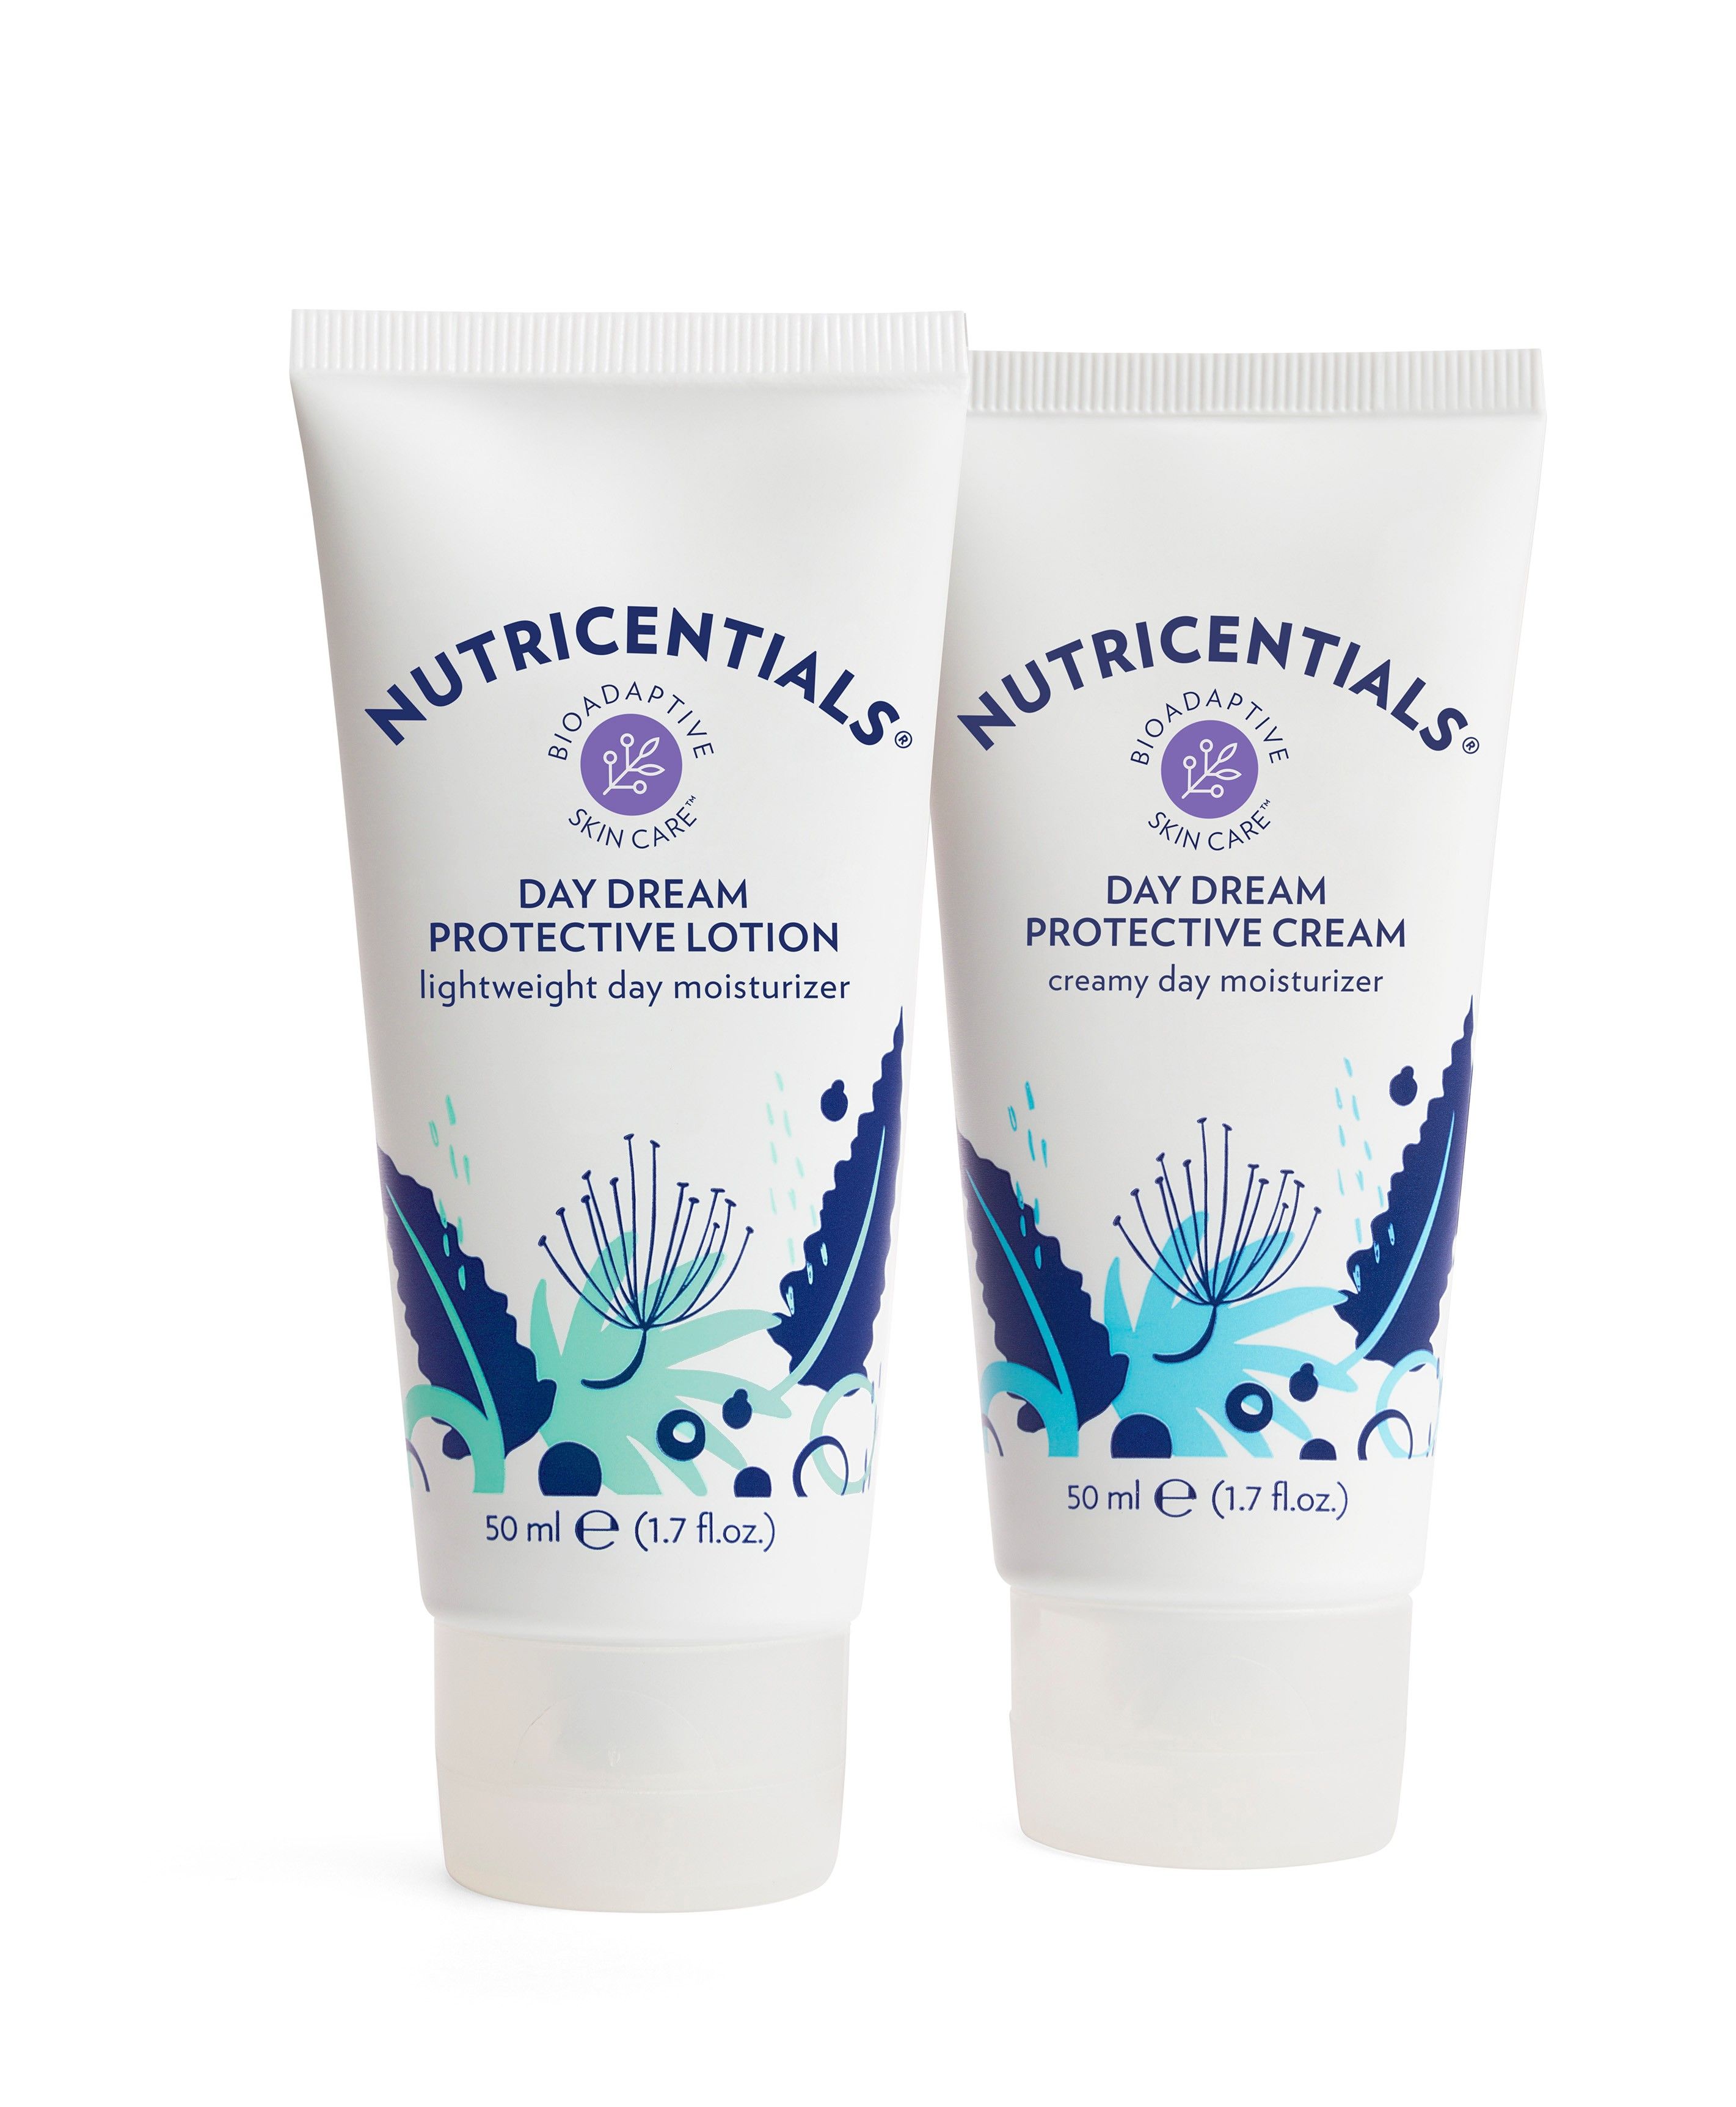 Nu Skin presenta Nutricentials Bioadaptive Skin Care, la primera gama de productos bioadaptativos del mundo